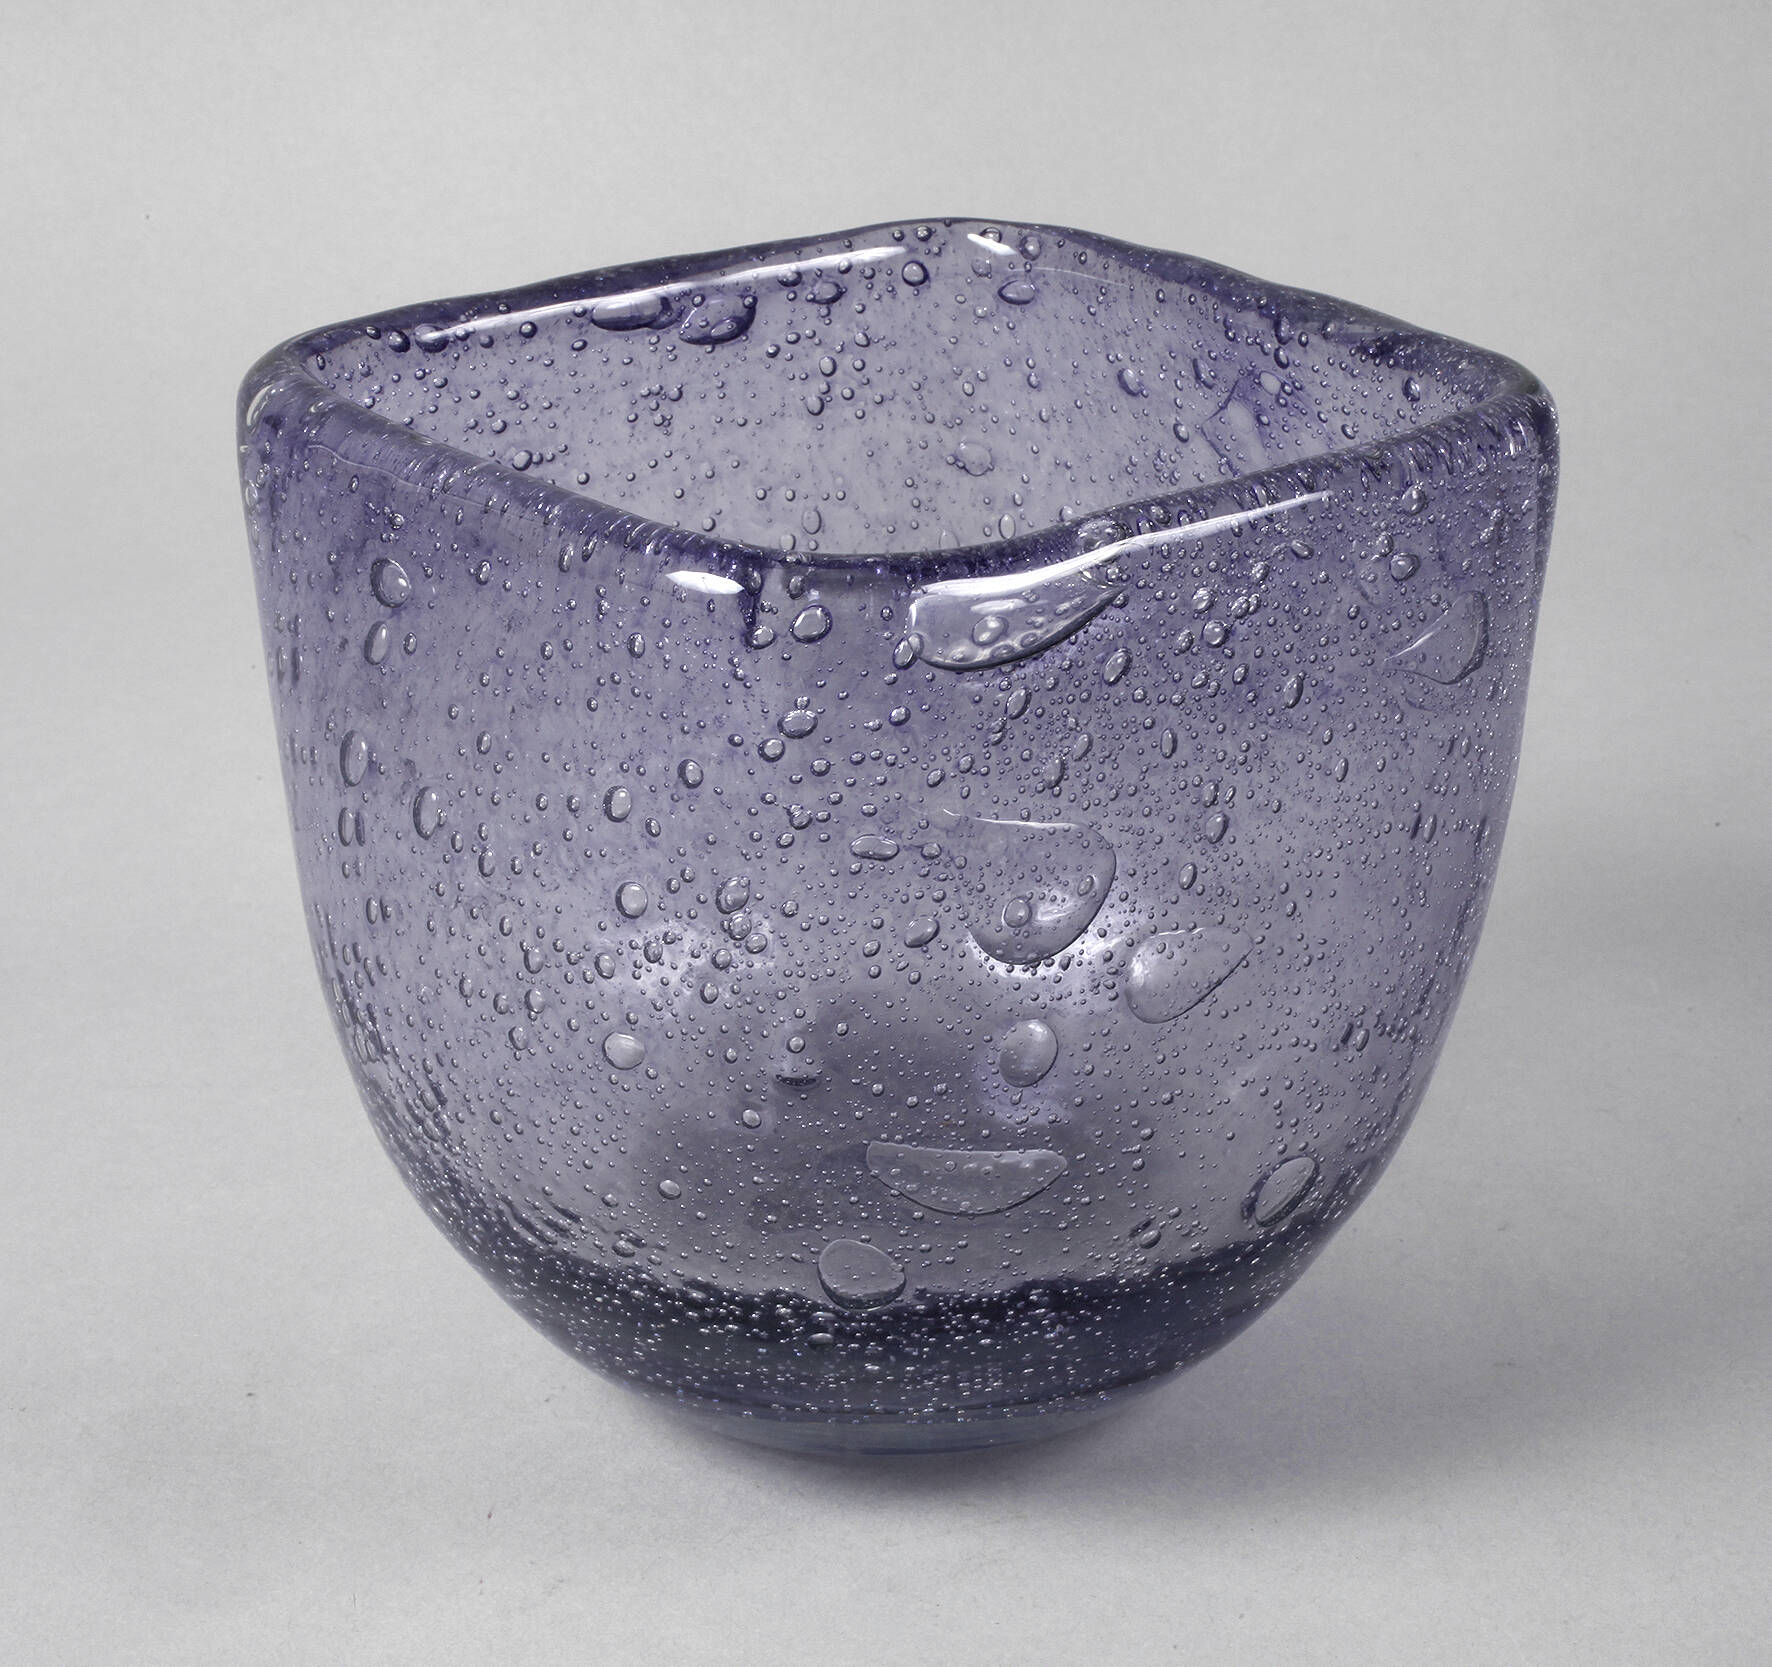 Glasschale violett mit unregelmäßigen Luftblasen